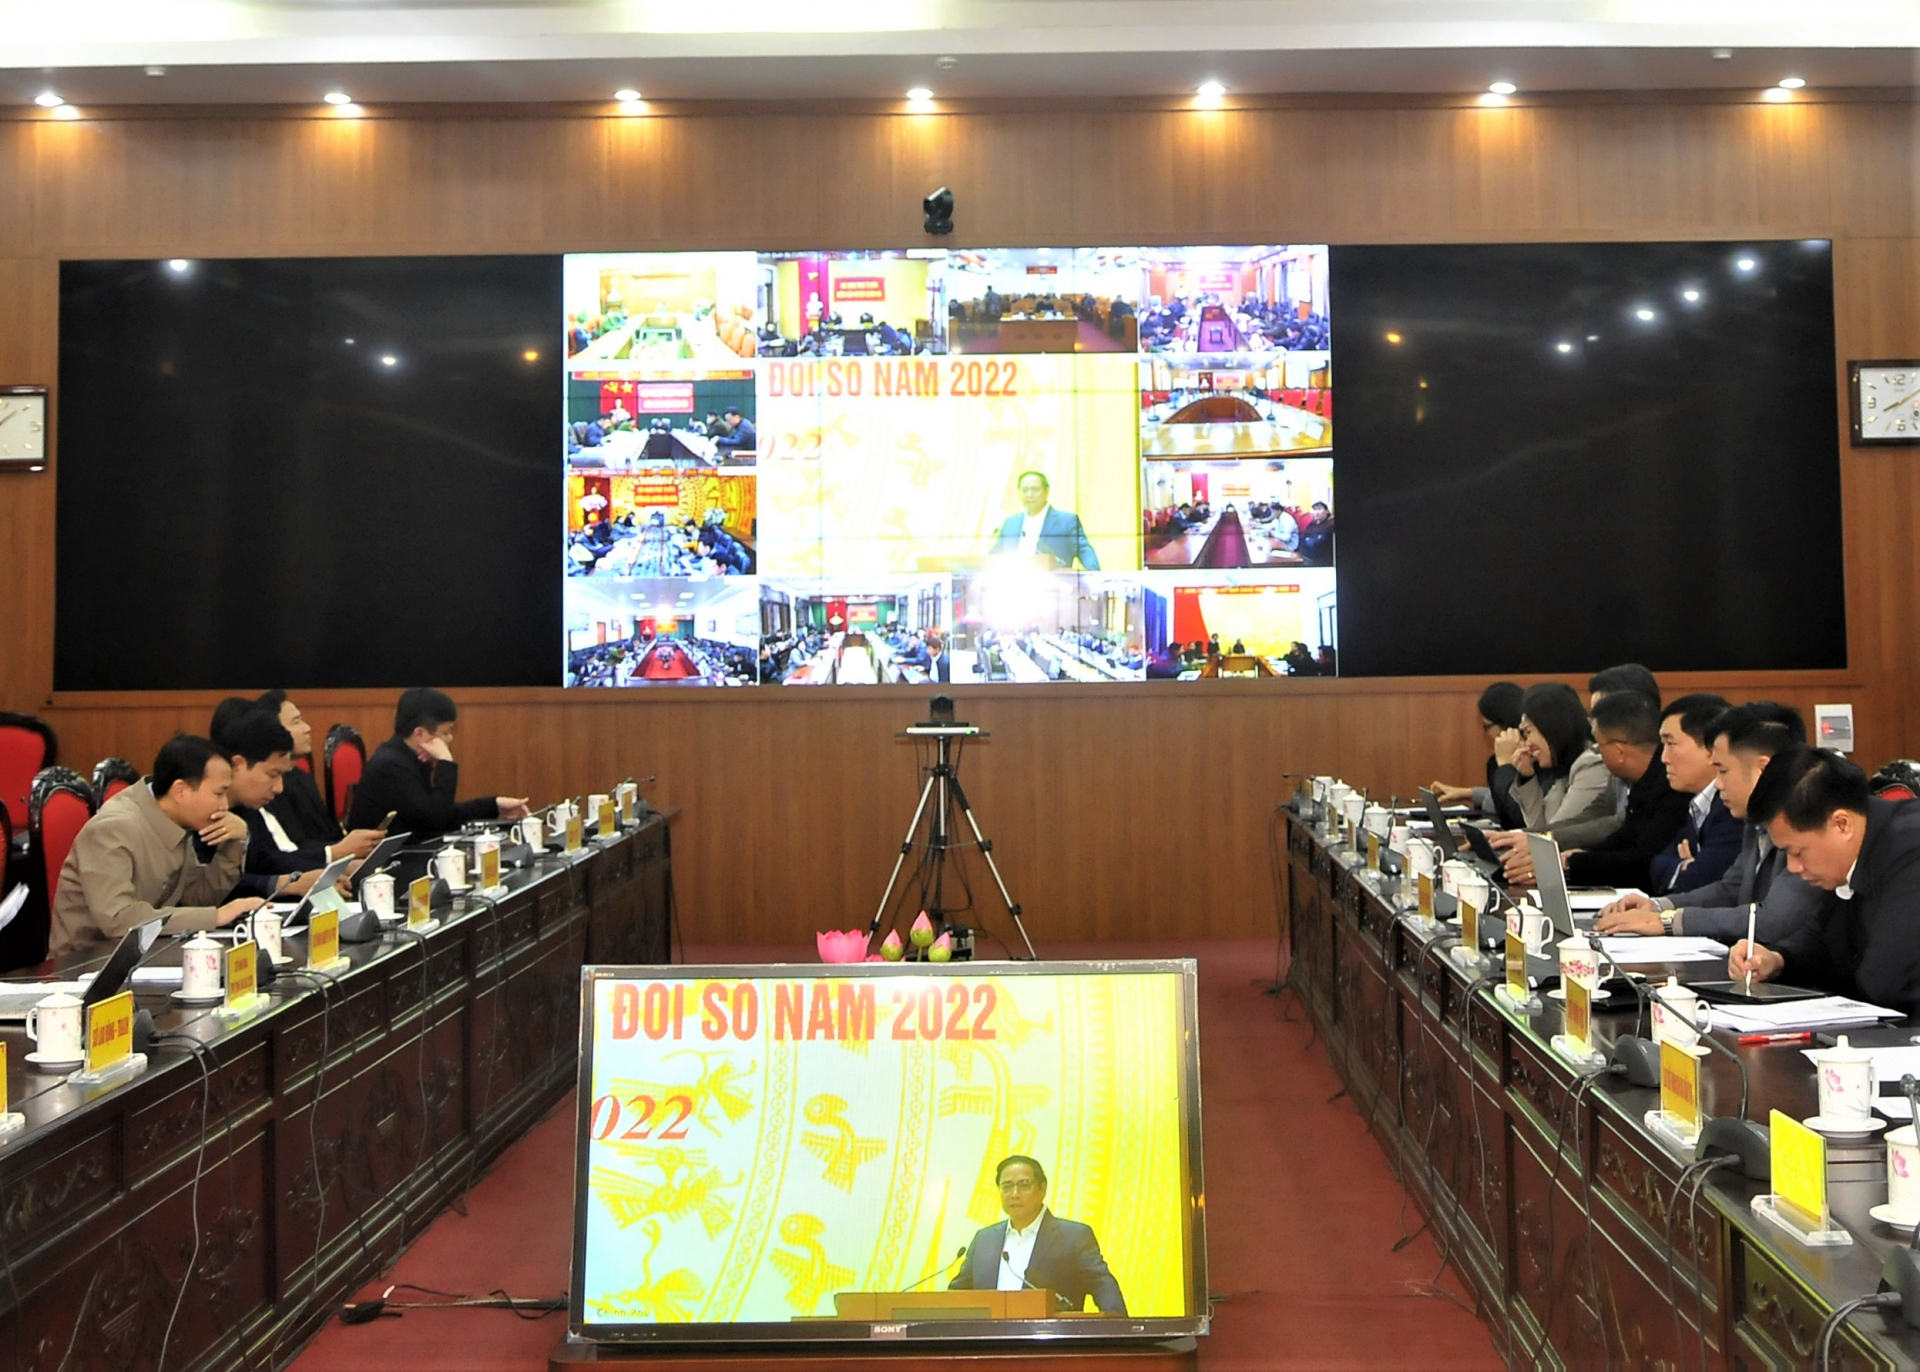 Hội nghị được tổ chức theo hình thức trực tuyến tới các tỉnh, thành phố trong cả nước.